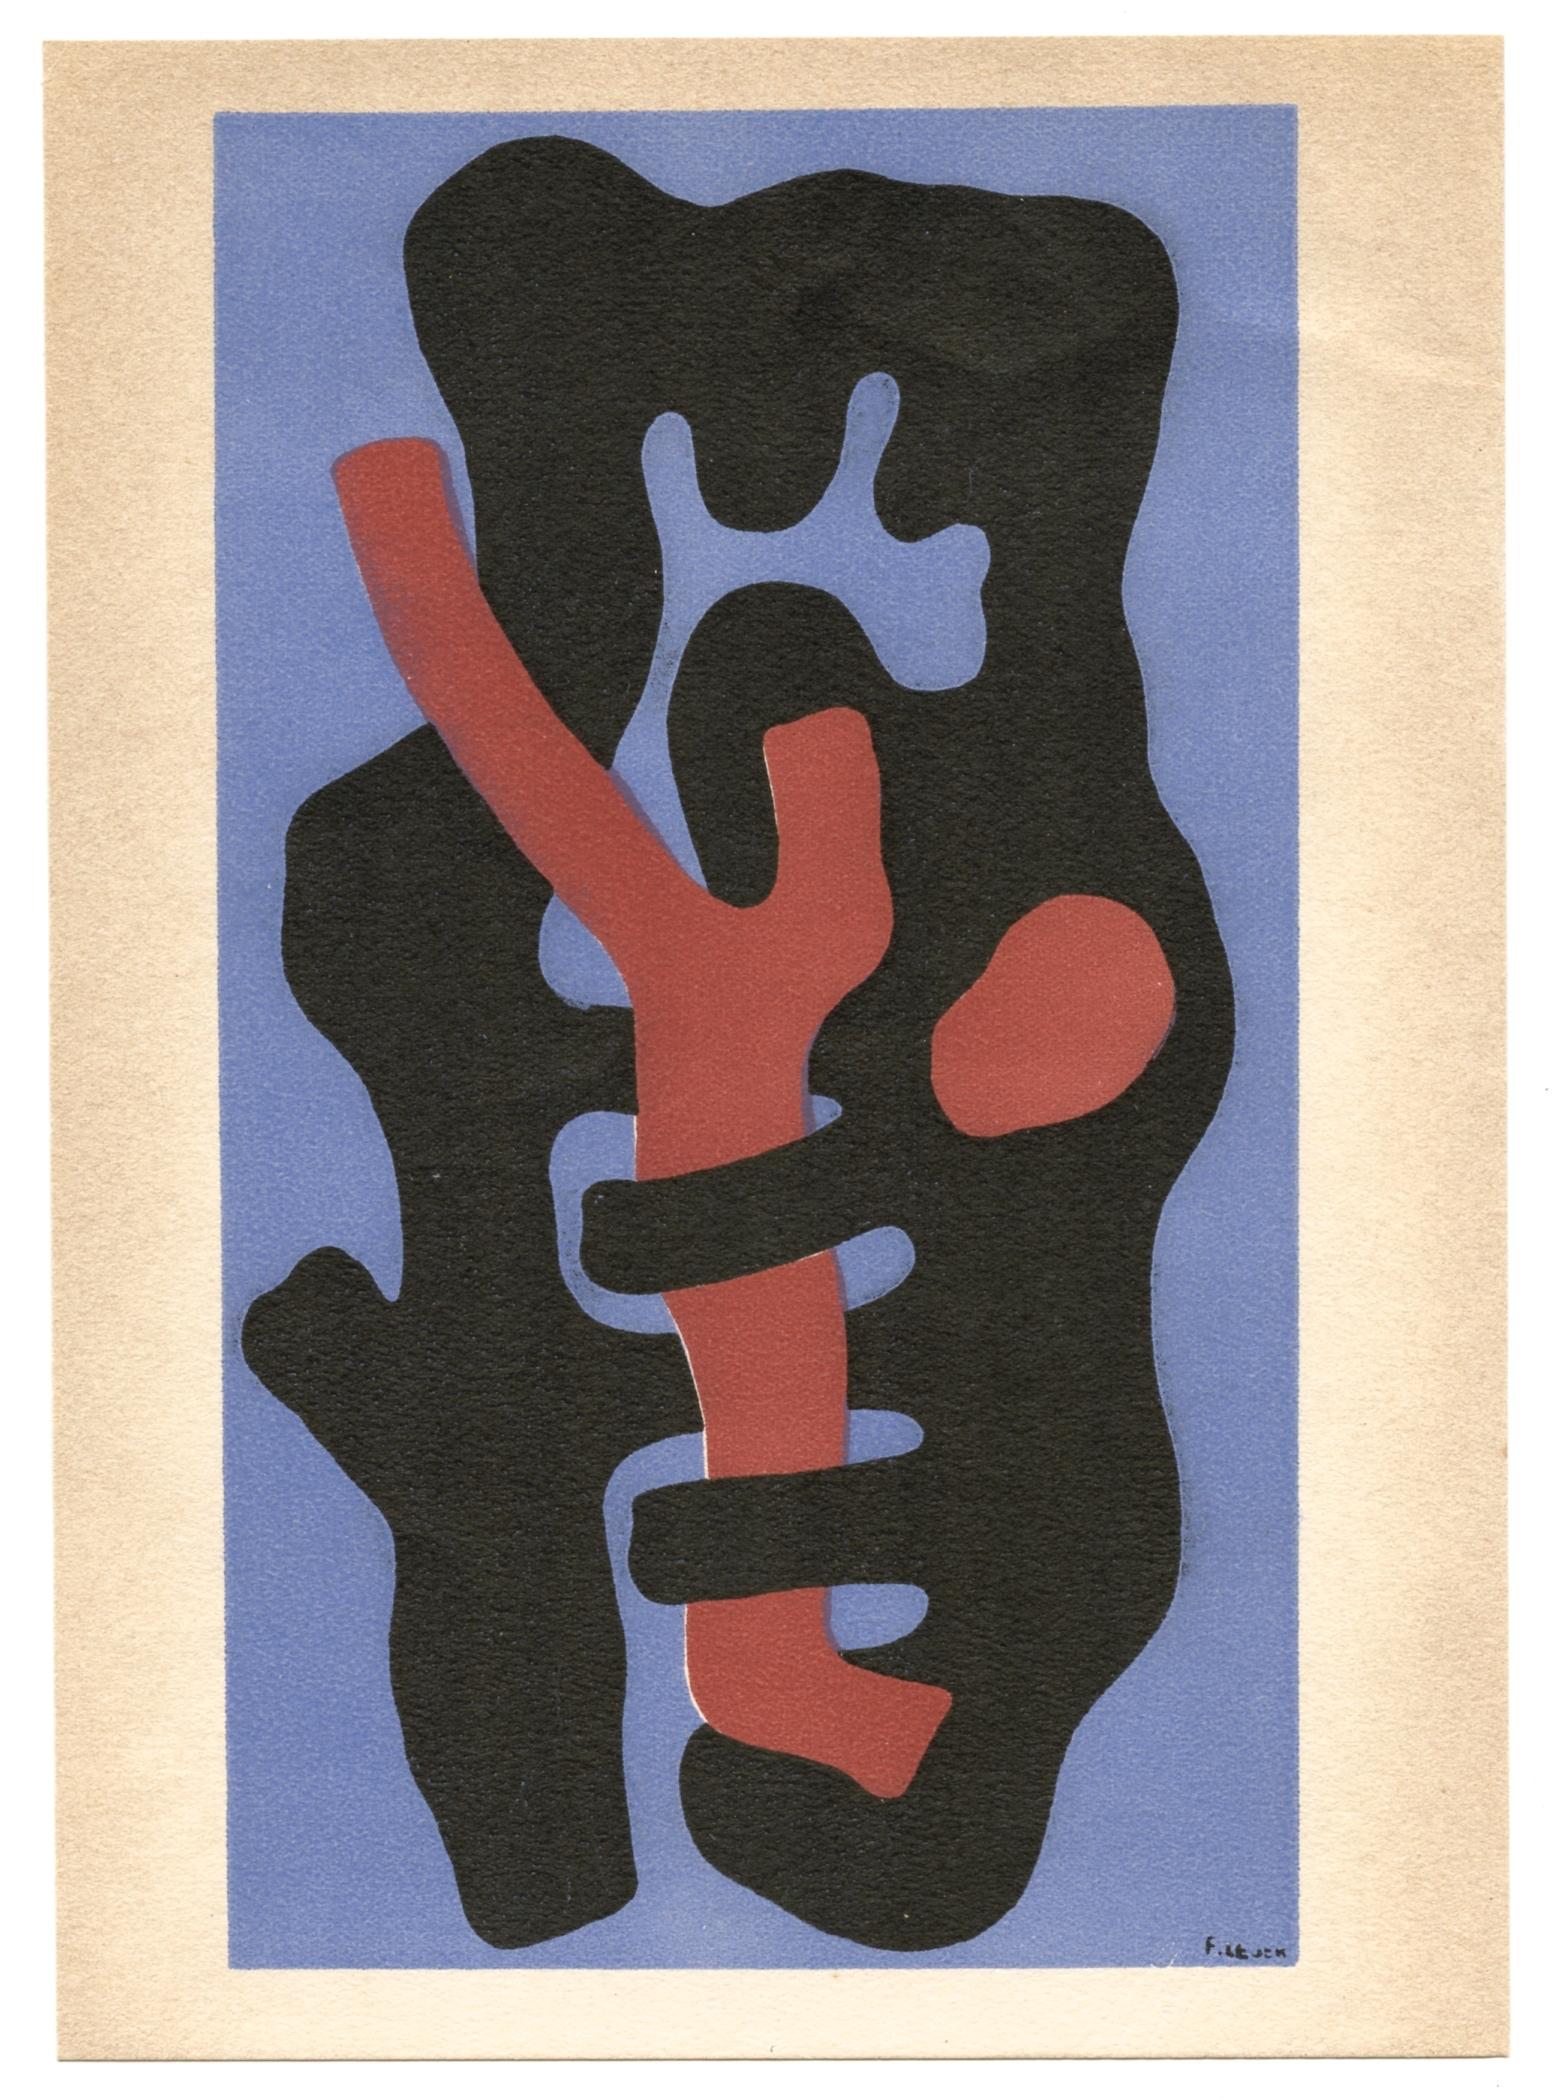 "Elements sur un fond bleu" lithograph - Print by (after) Fernand Léger